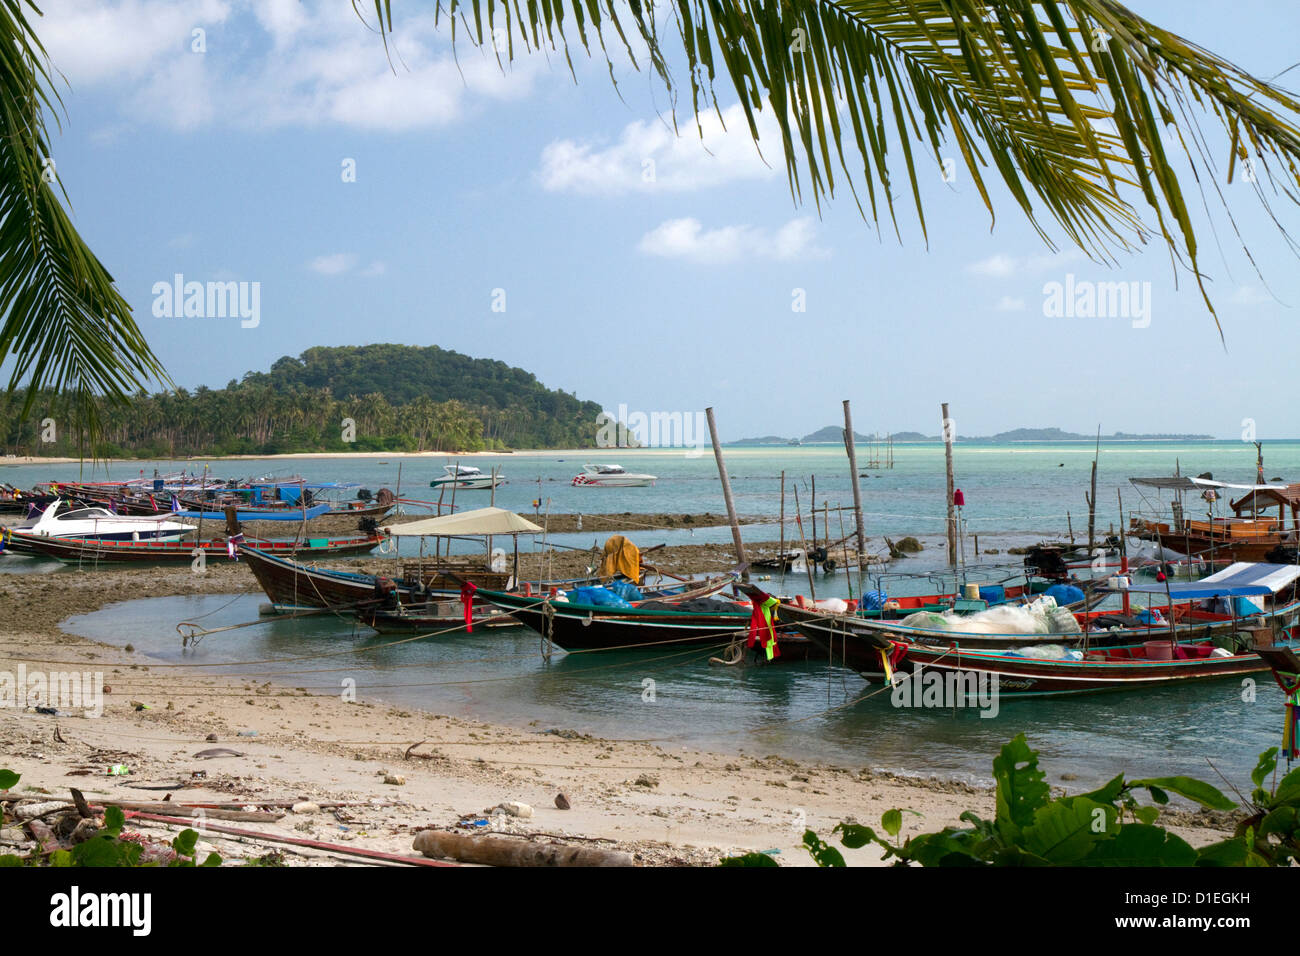 Bateaux de pêche dans le golfe de Thaïlande sur l'île de Ko Samui, Thaïlande. Banque D'Images